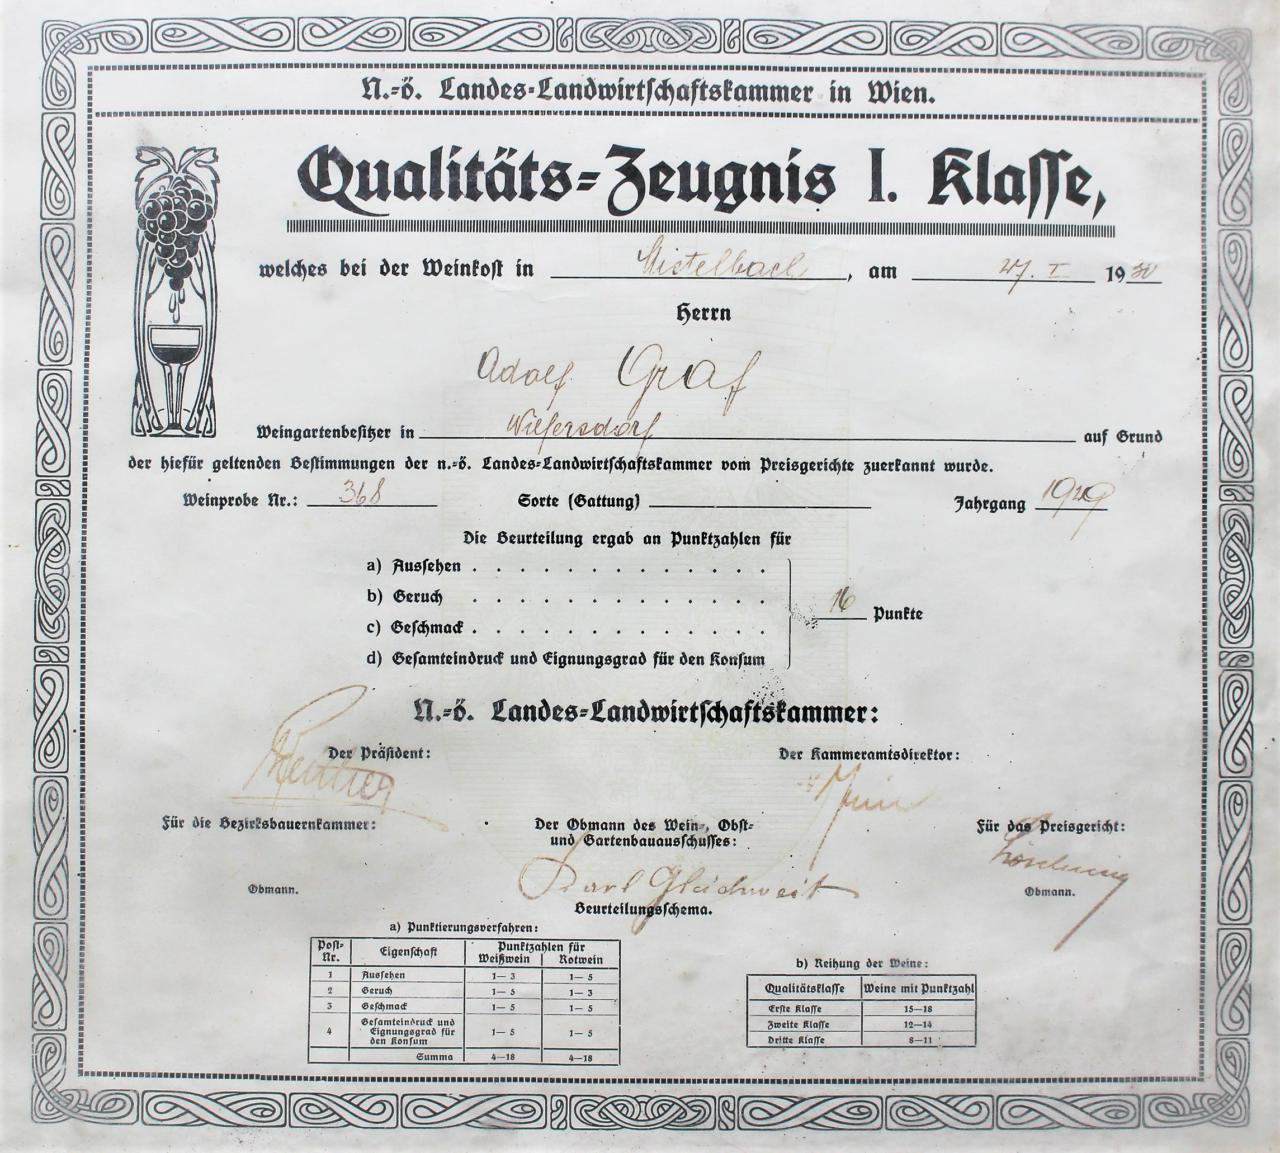 Wein- Qualitätszeugnis zur Weinkost in Mistelbach, am 27.I.1930 